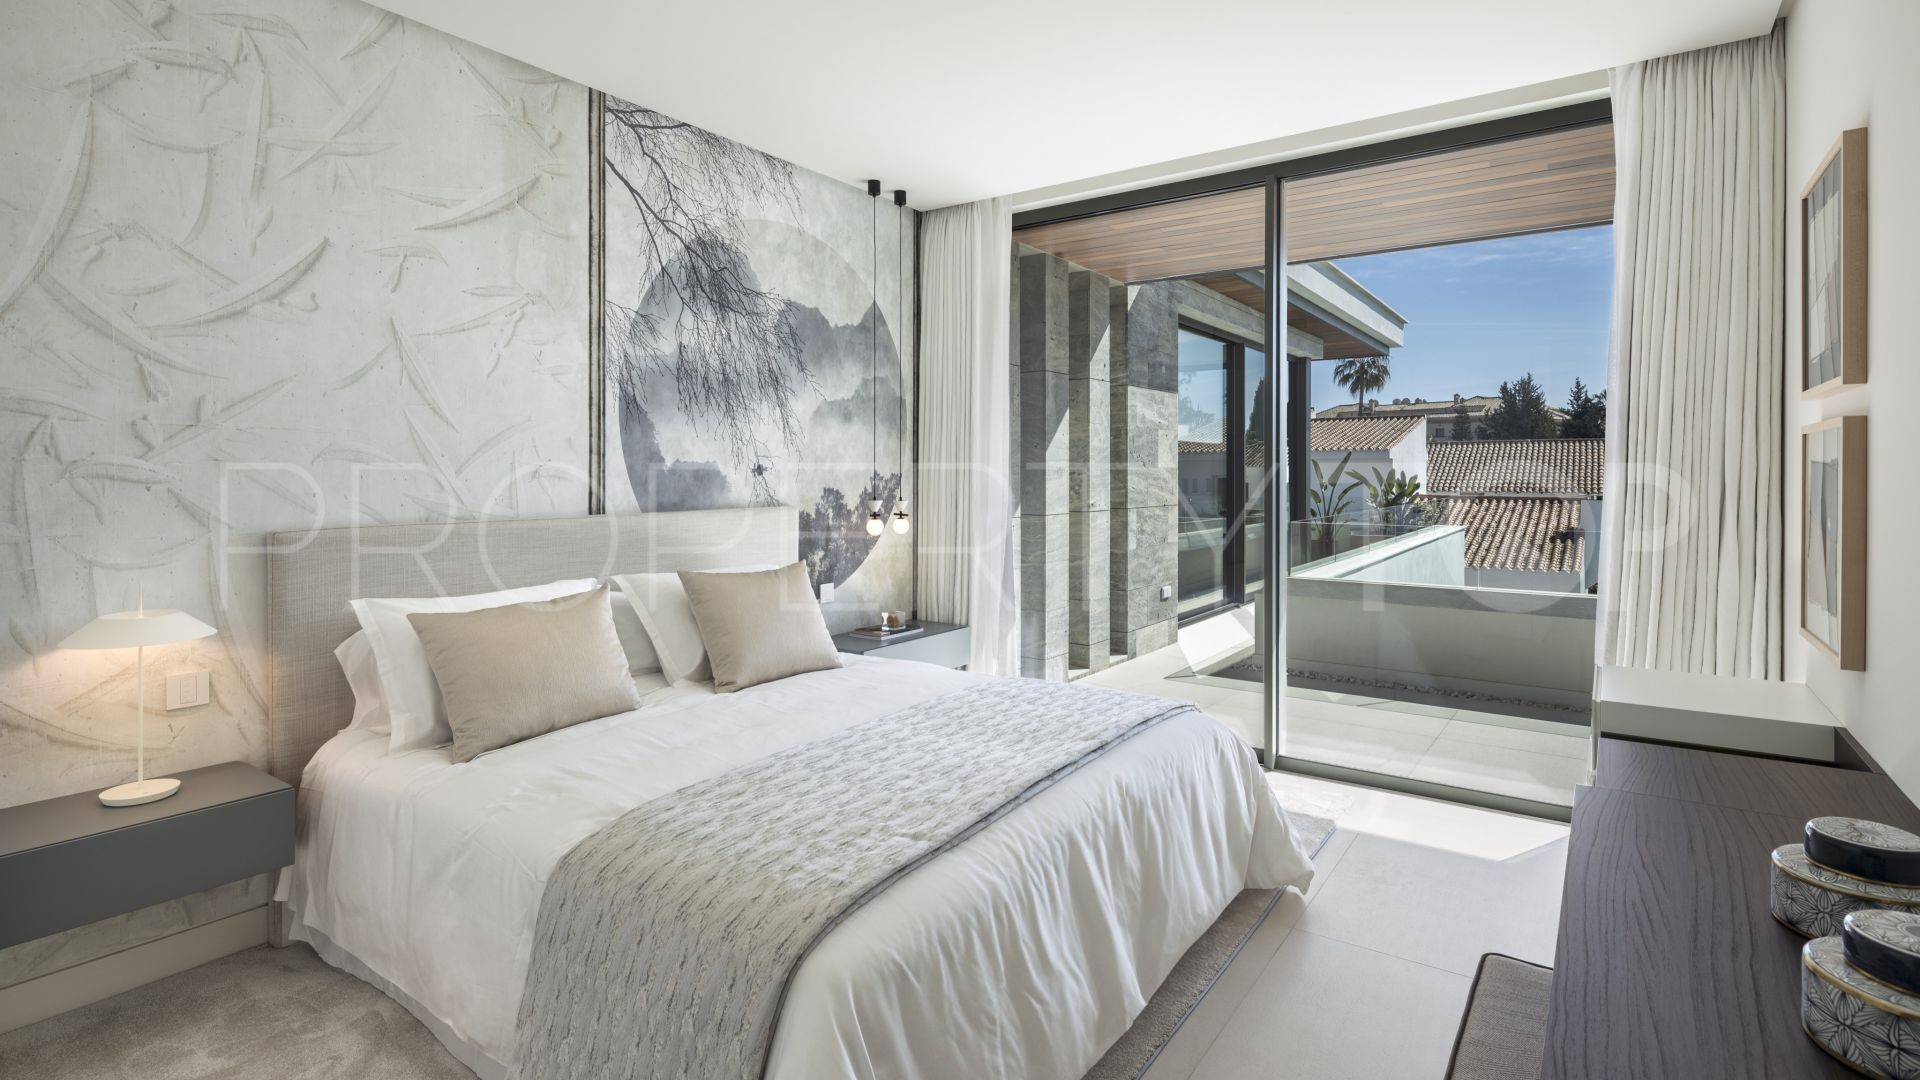 5 bedrooms Cortijo Blanco villa for sale